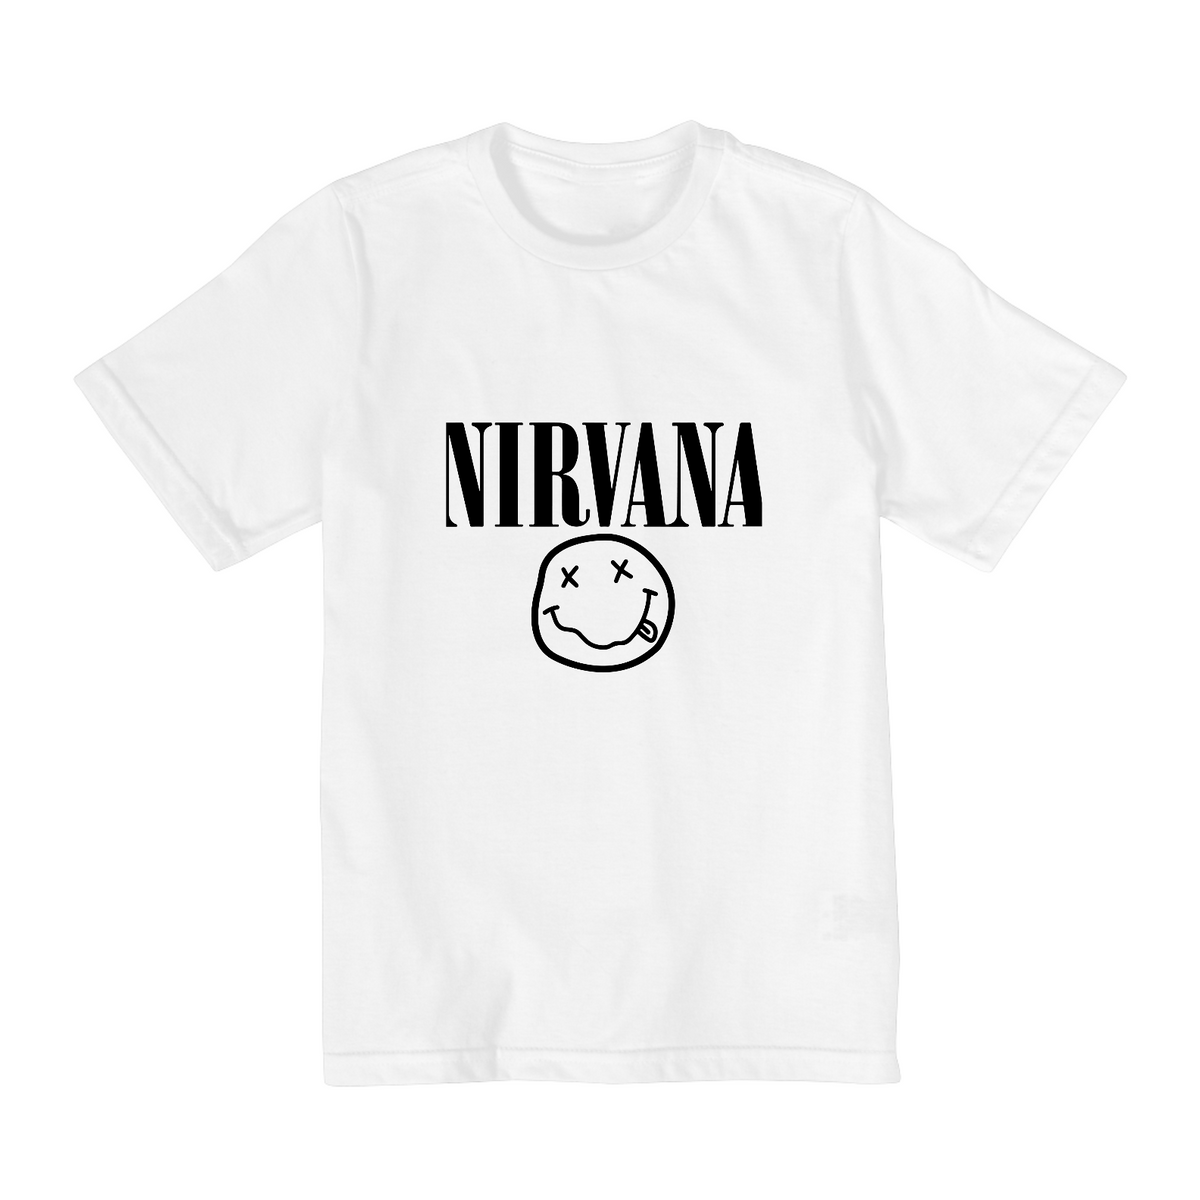 Nome do produto: Camiseta Infantil 02 a 08 anos - Bandas -  Nirvana 